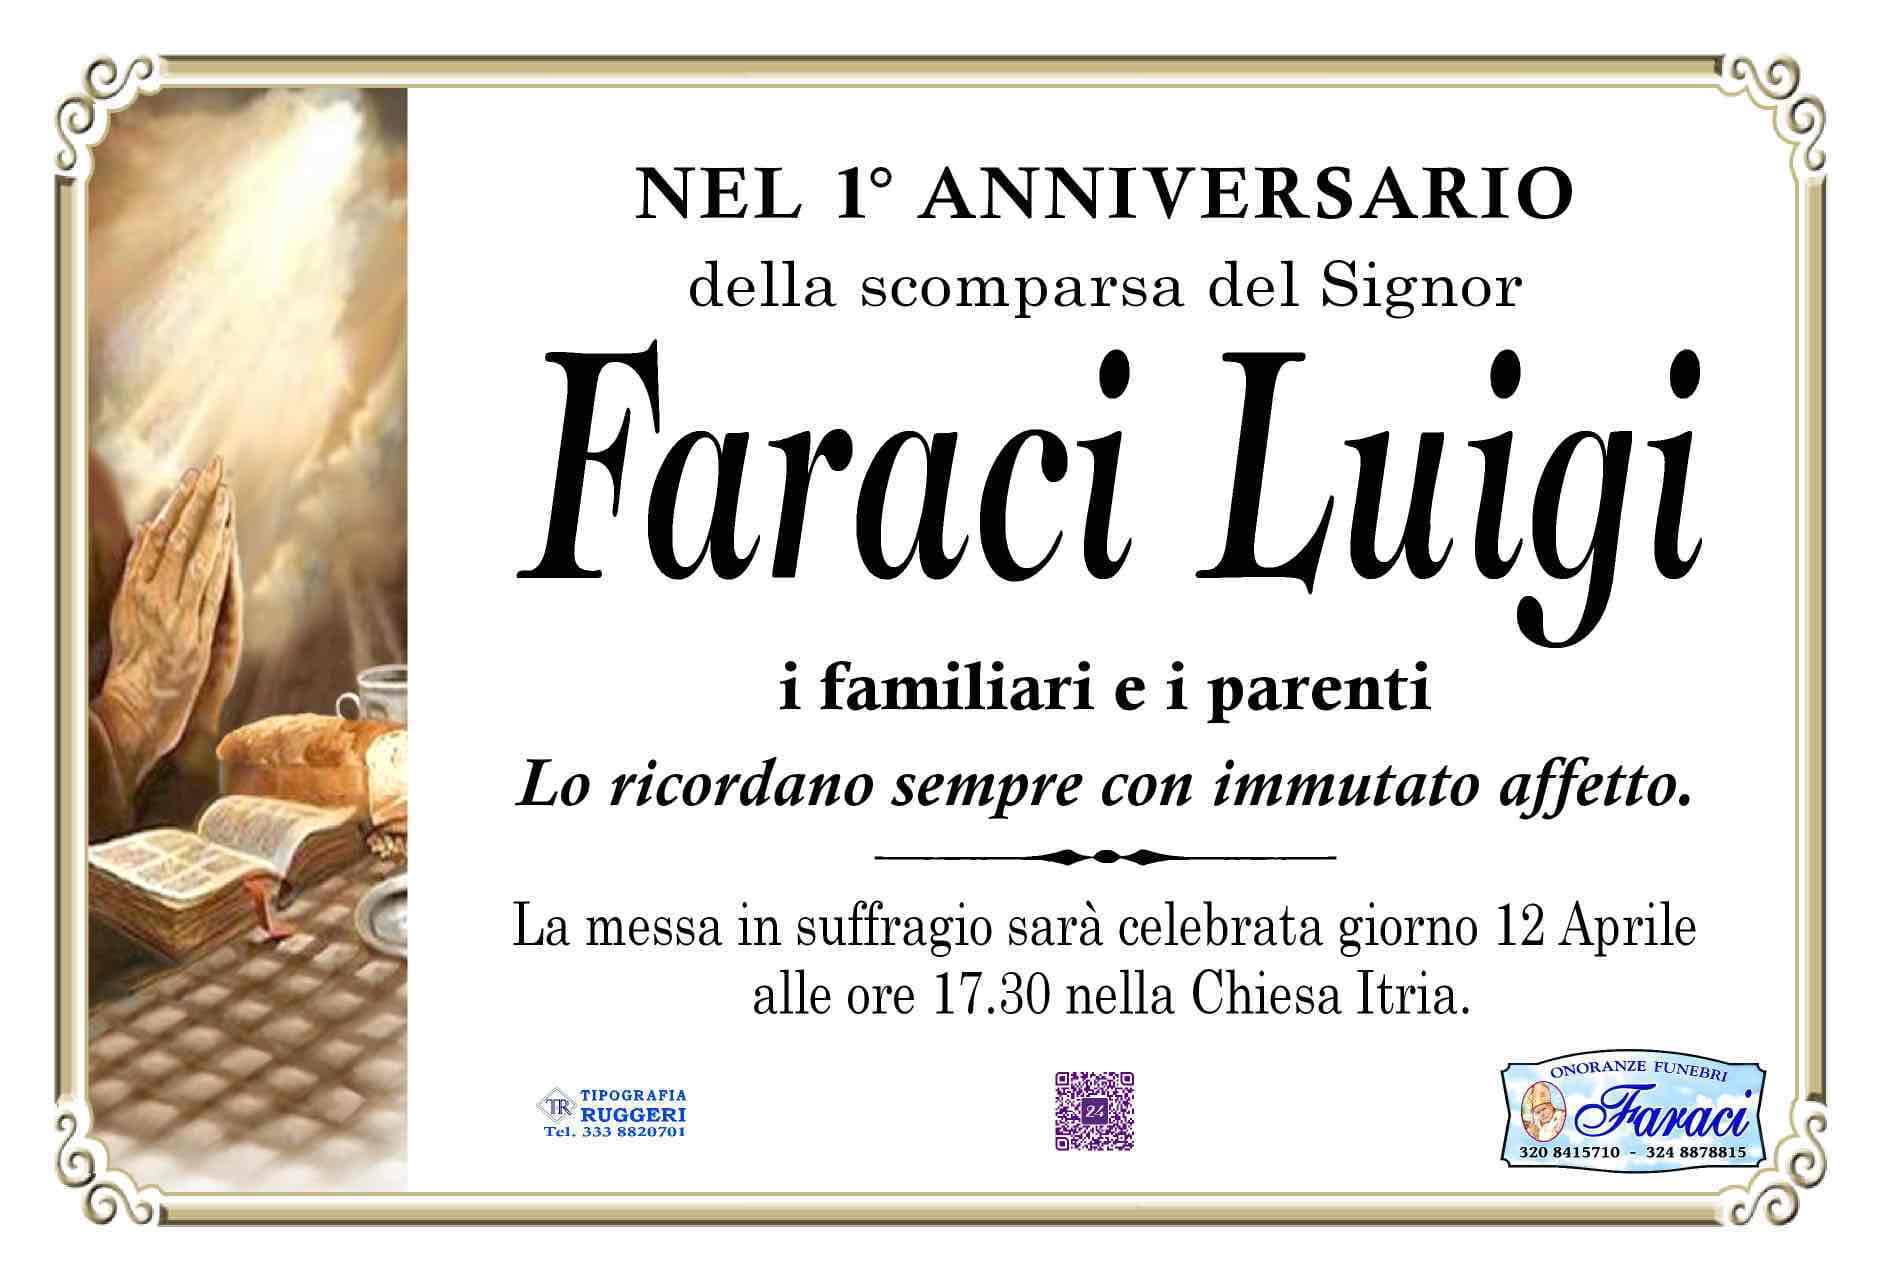 Luigi Faraci